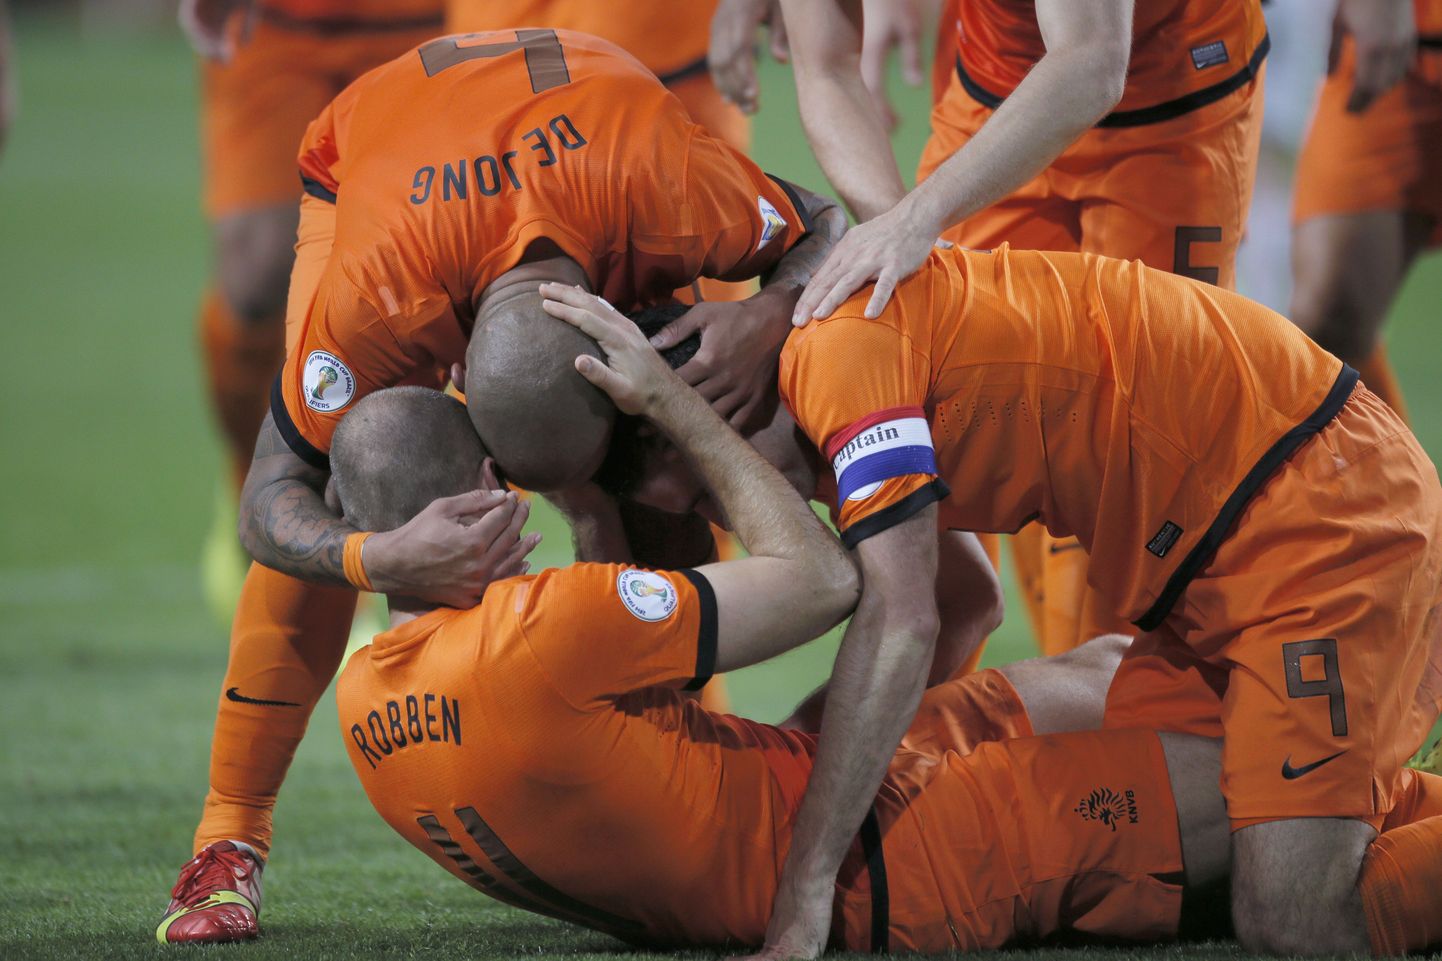 Hollandi mängijad väravat tähistamas